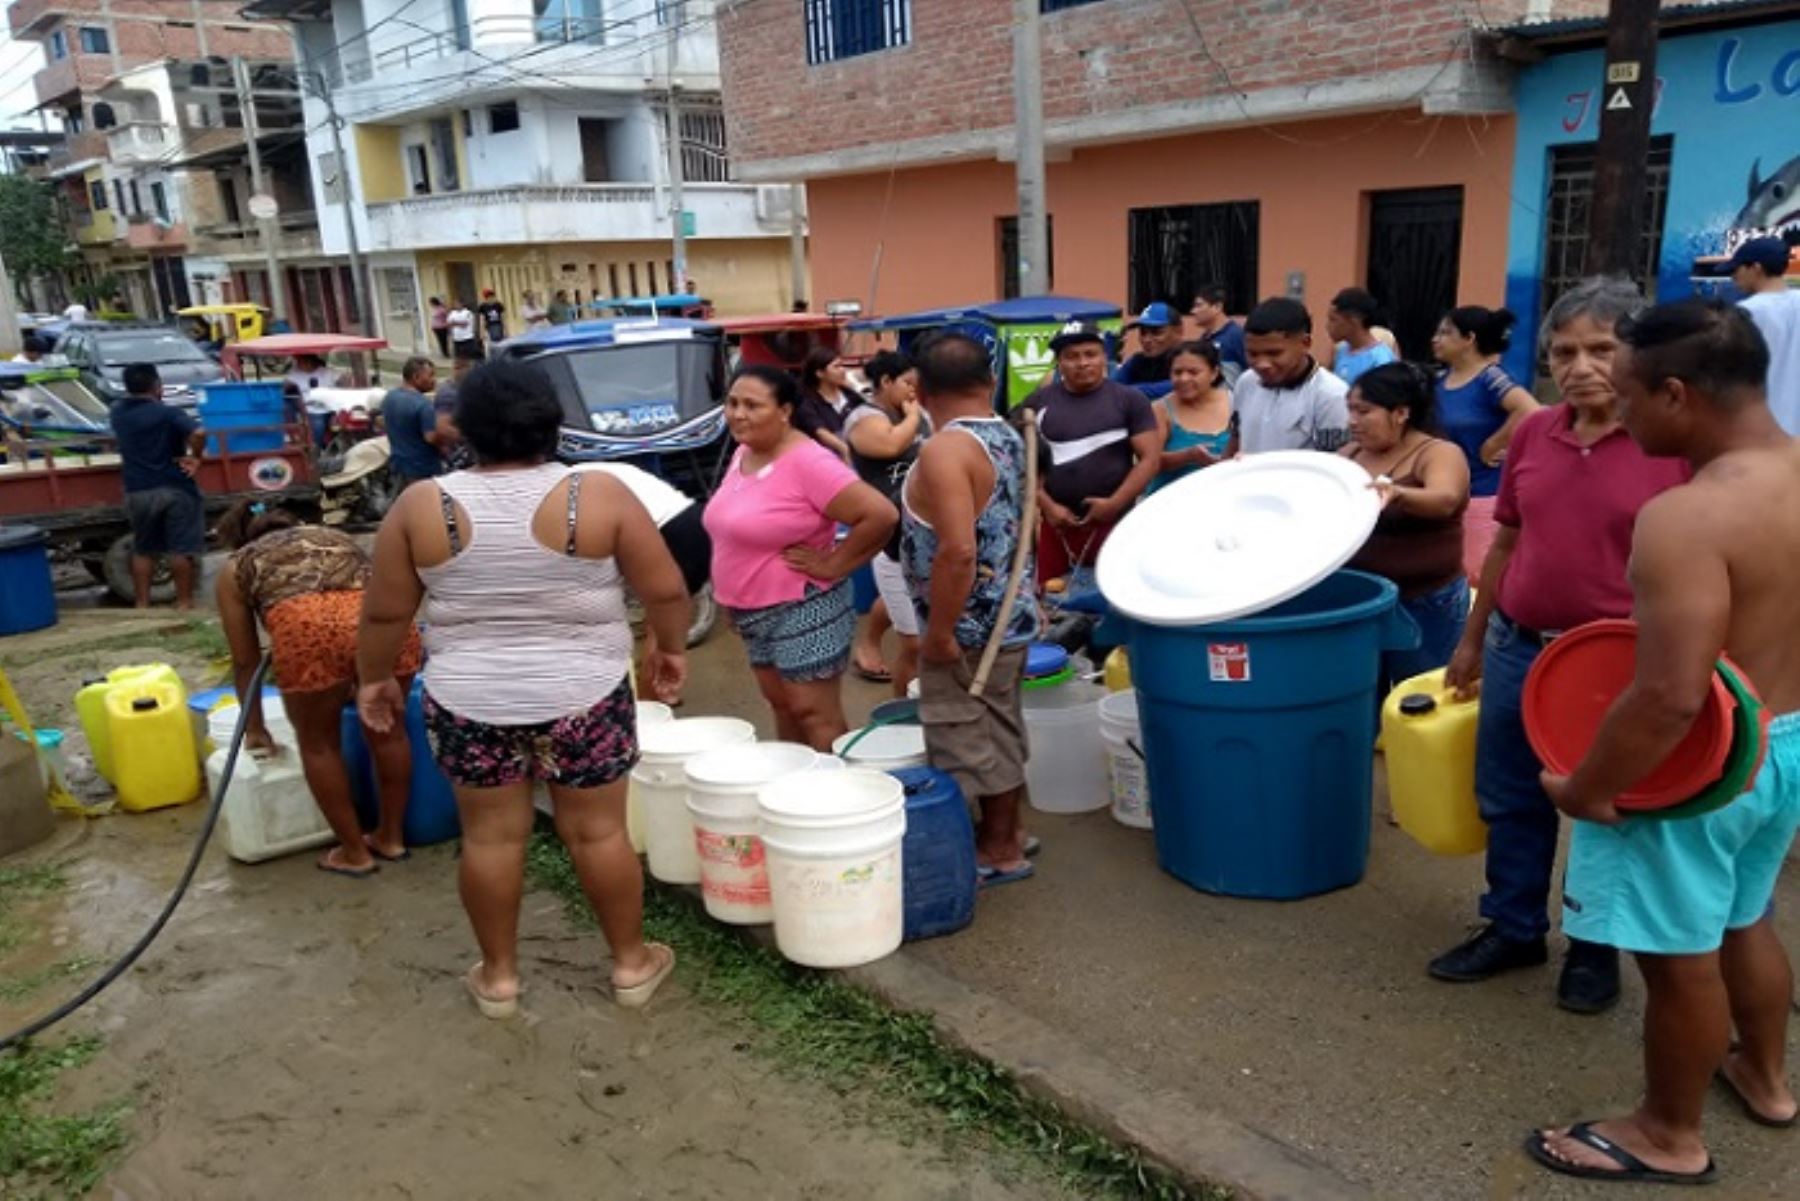 Los barrios, desde José Jiménez hasta el Bellavista y otros sectores, se vieron afectados con la falta de agua.